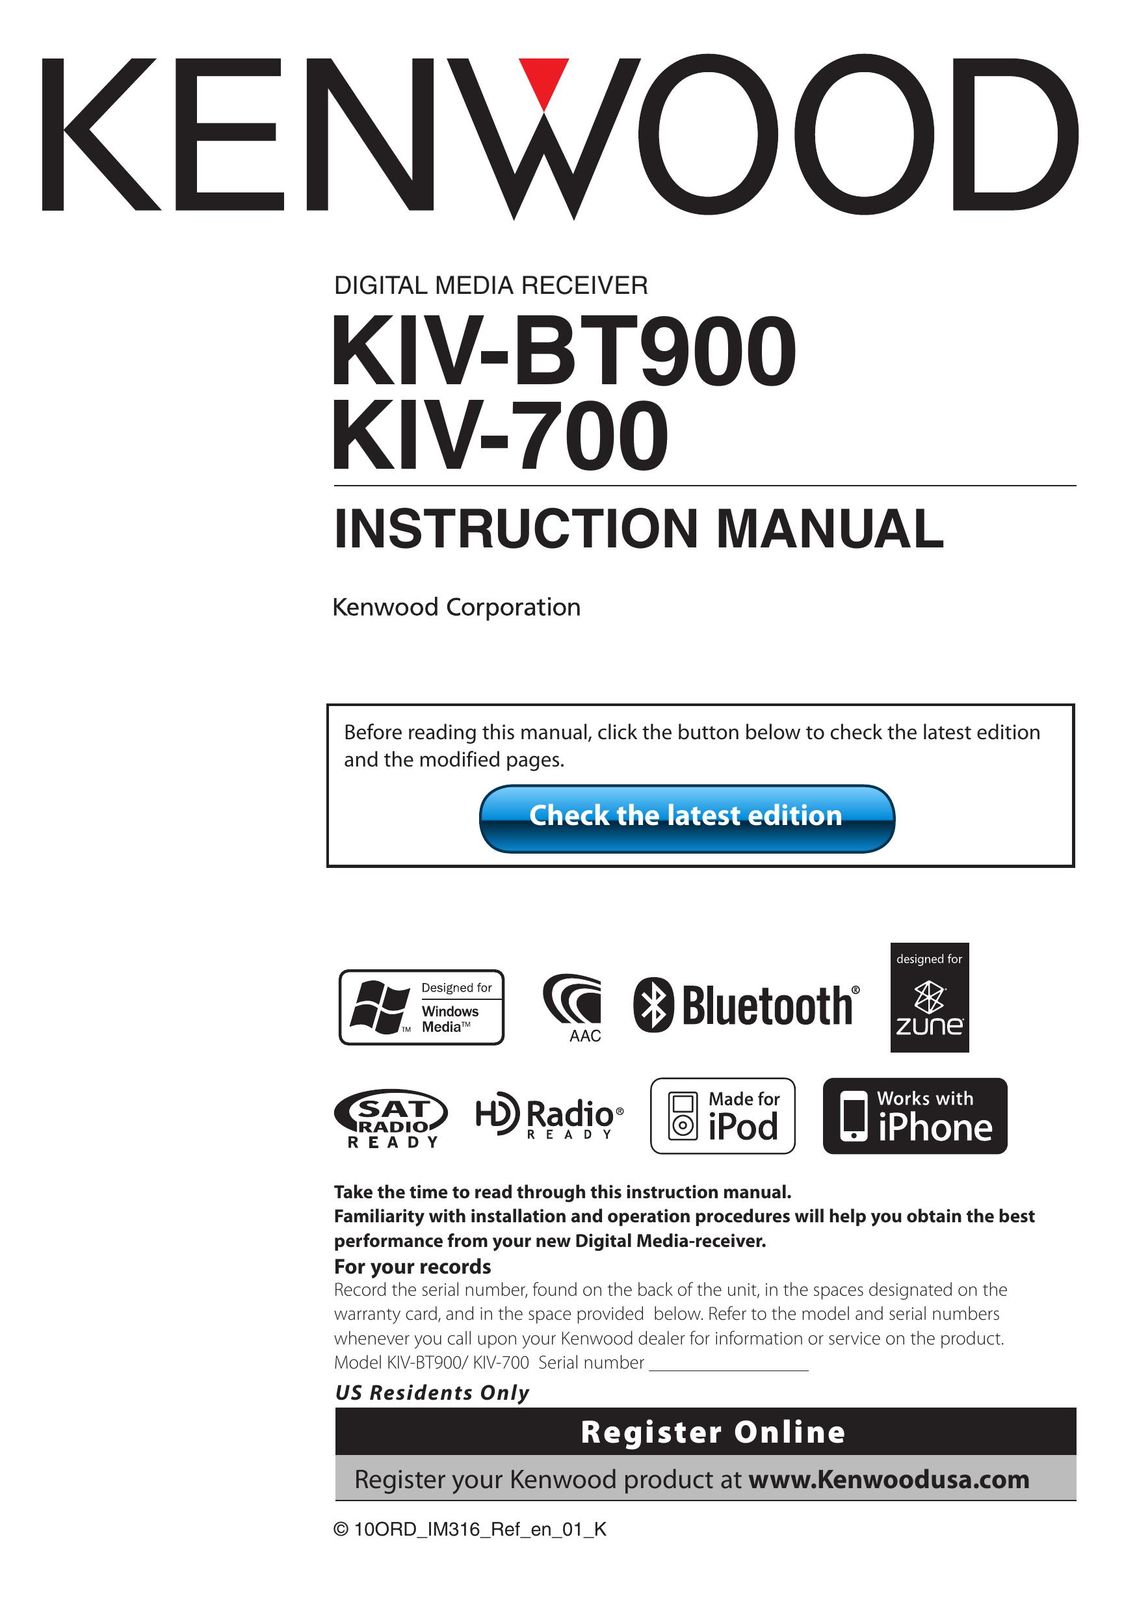 Kenwood KIV-BT900 Car Satellite Radio System User Manual